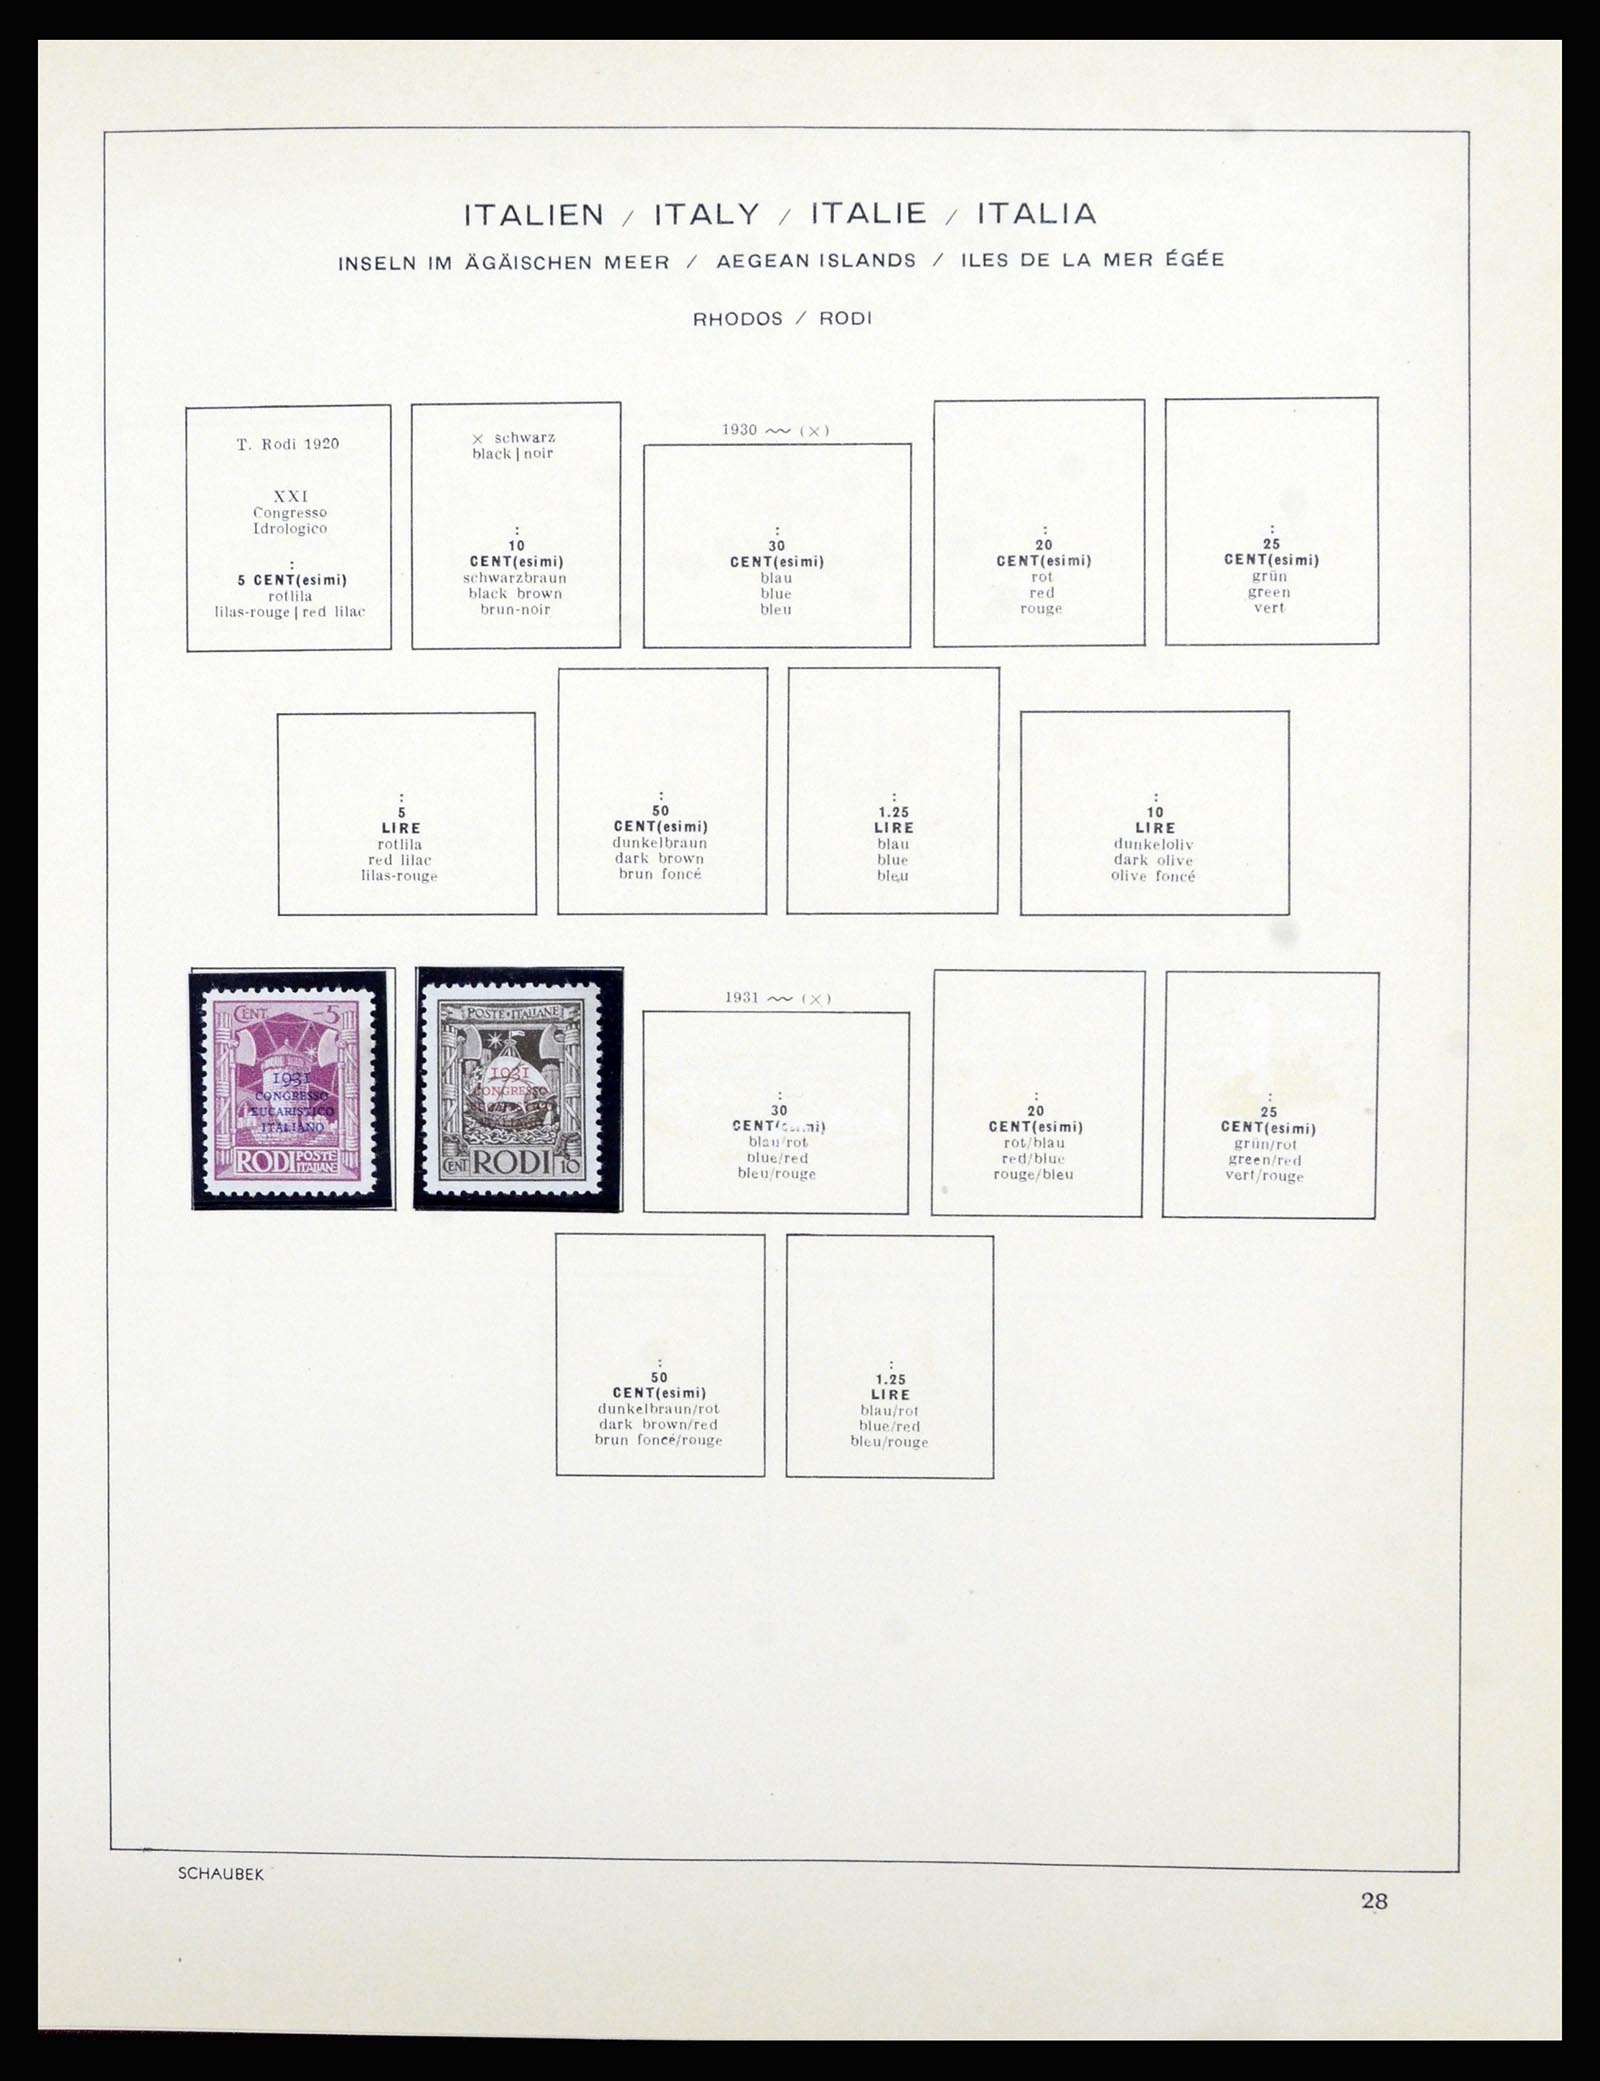 36576 036 - Stamp collection 36576 Italiaanse gebieden en koloniën 1874-1954.